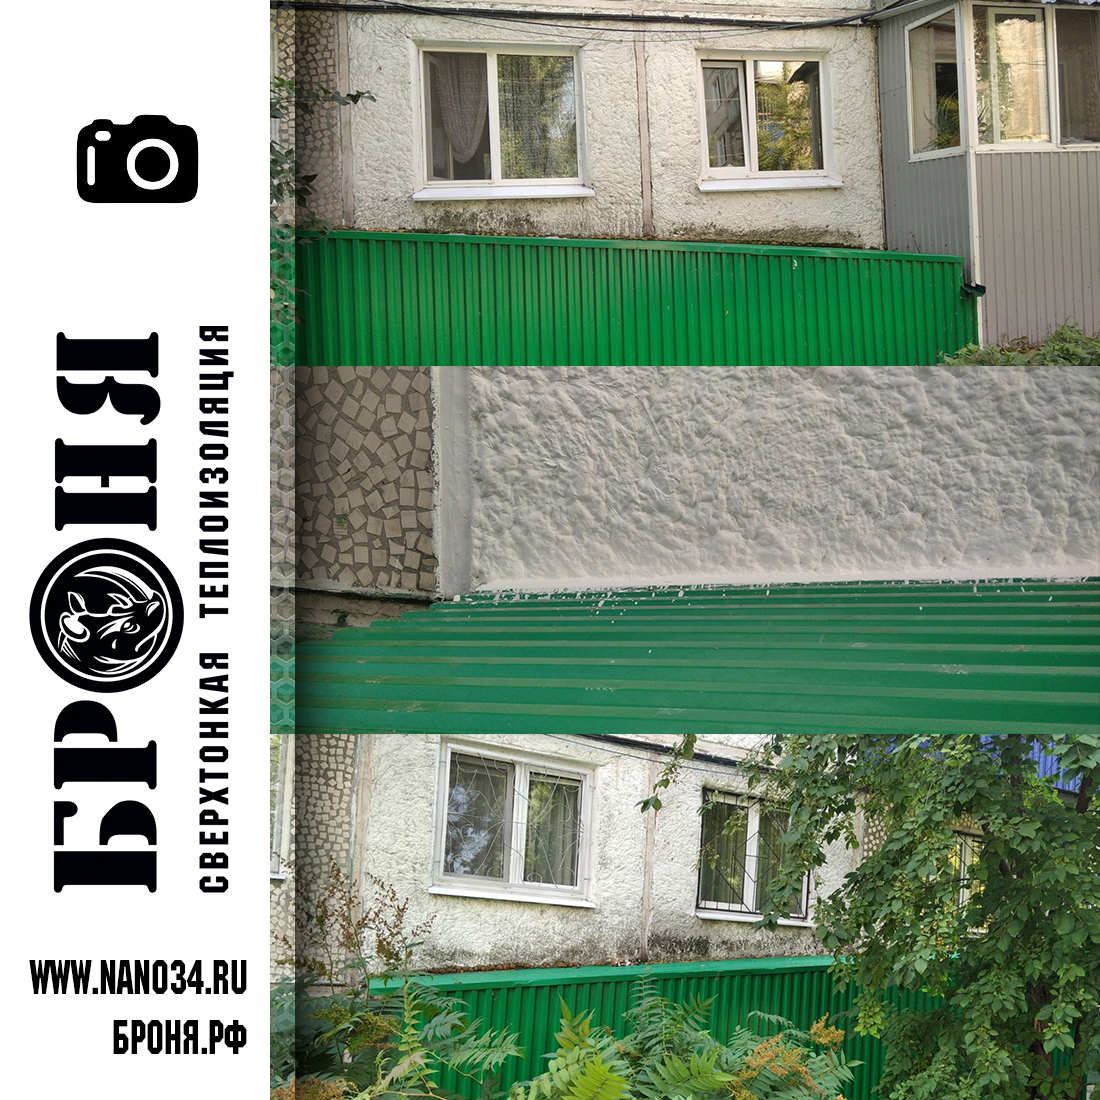 Броня Акваблок Эффект  на фасаде квартиры в многоквартирном доме в г. Ульяновск (фото и видео) 